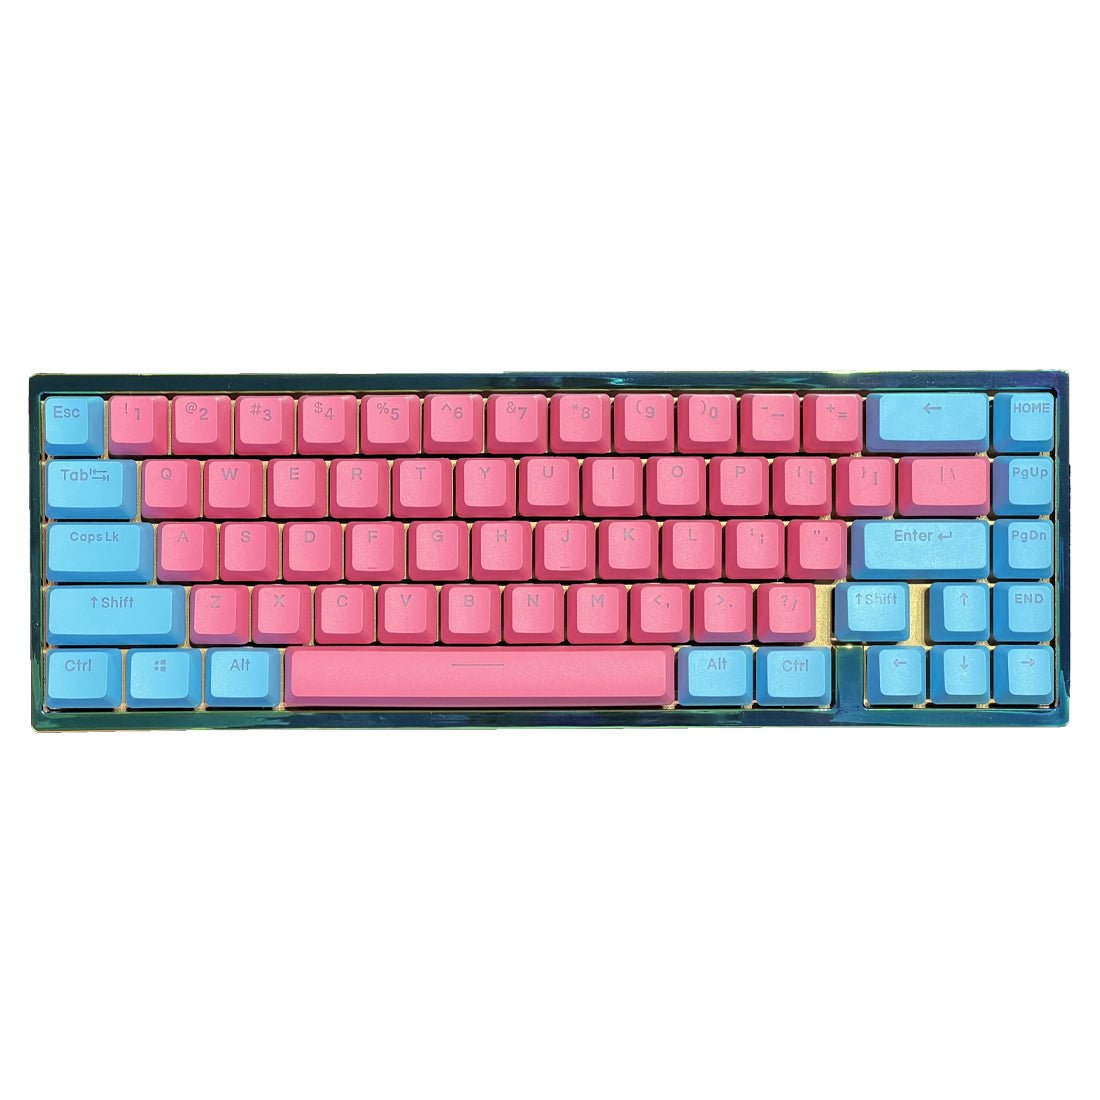 Pre-Build Keyboard III | III لوحة مفاتيح مجهزة - Store 974 | ستور ٩٧٤